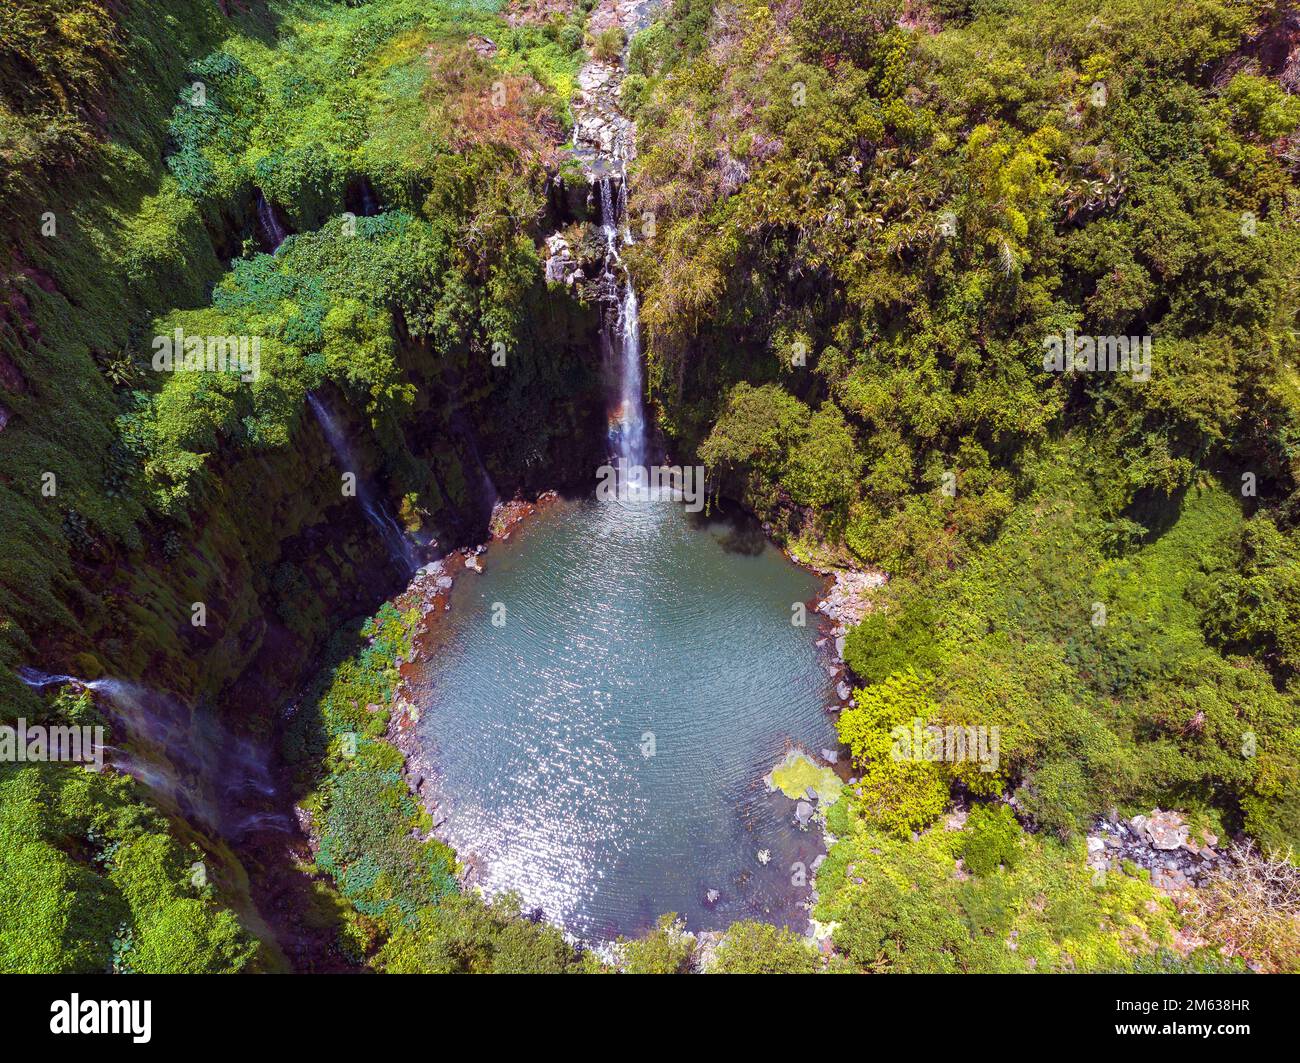 Kaskade de Balfour. Der Wasserfall in Ebene Balfour Gardens. Dies ist ein Teil der Hauptstadt Port Louis auf der Insel Mauritius. Stockfoto